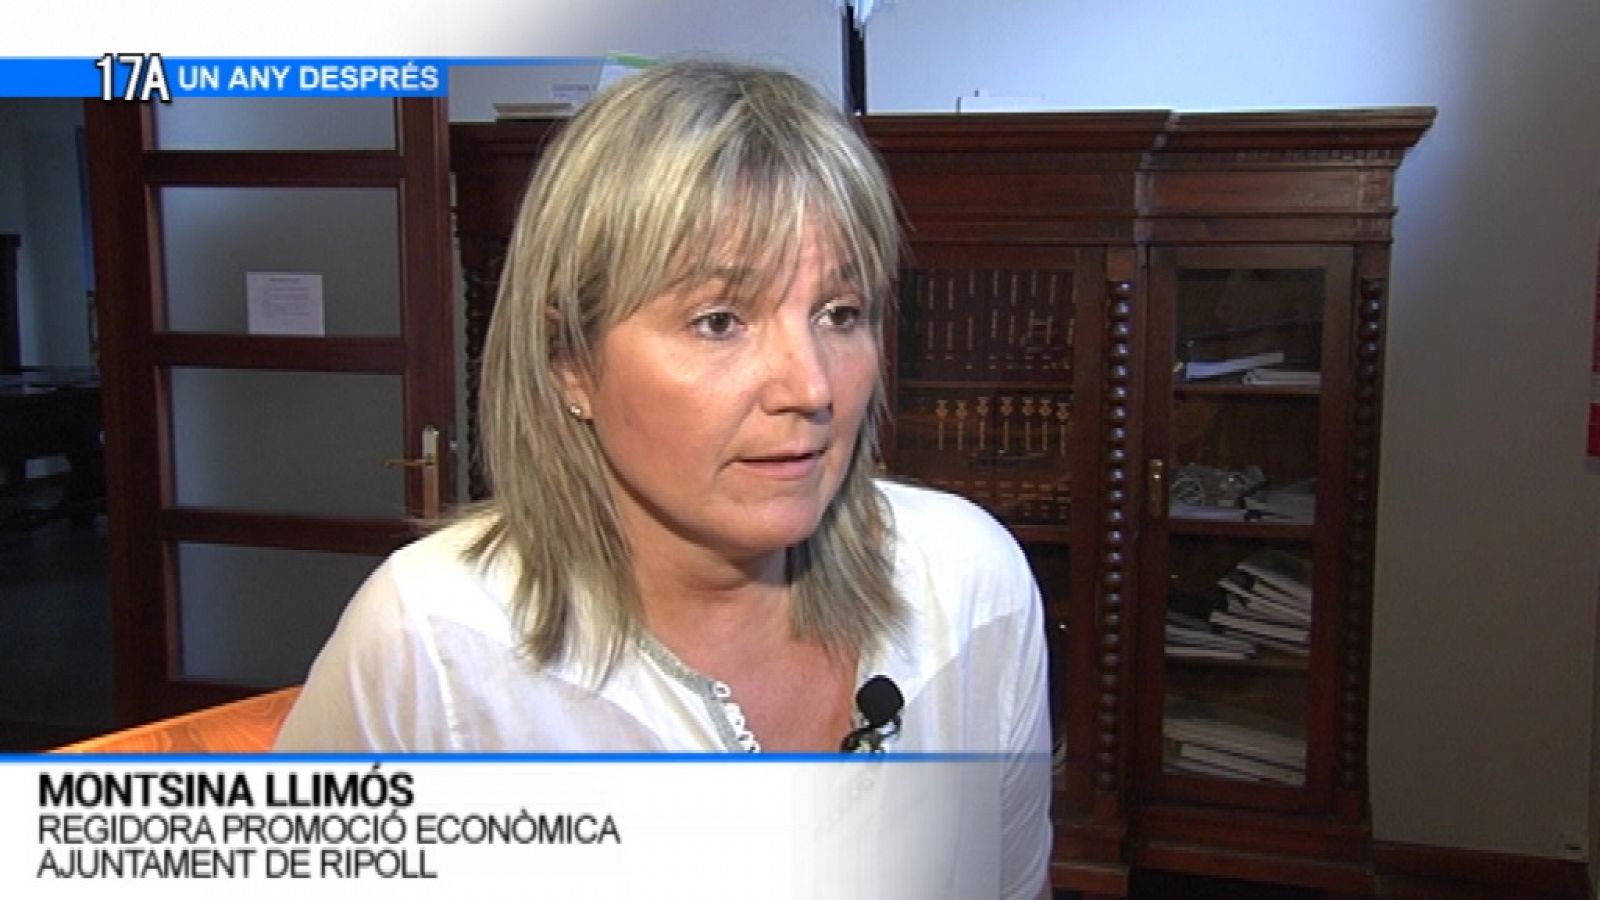 L'Informatiu: Montsina Llimós, regidora promoció econòmica ajuntament de Ripoll | RTVE Play